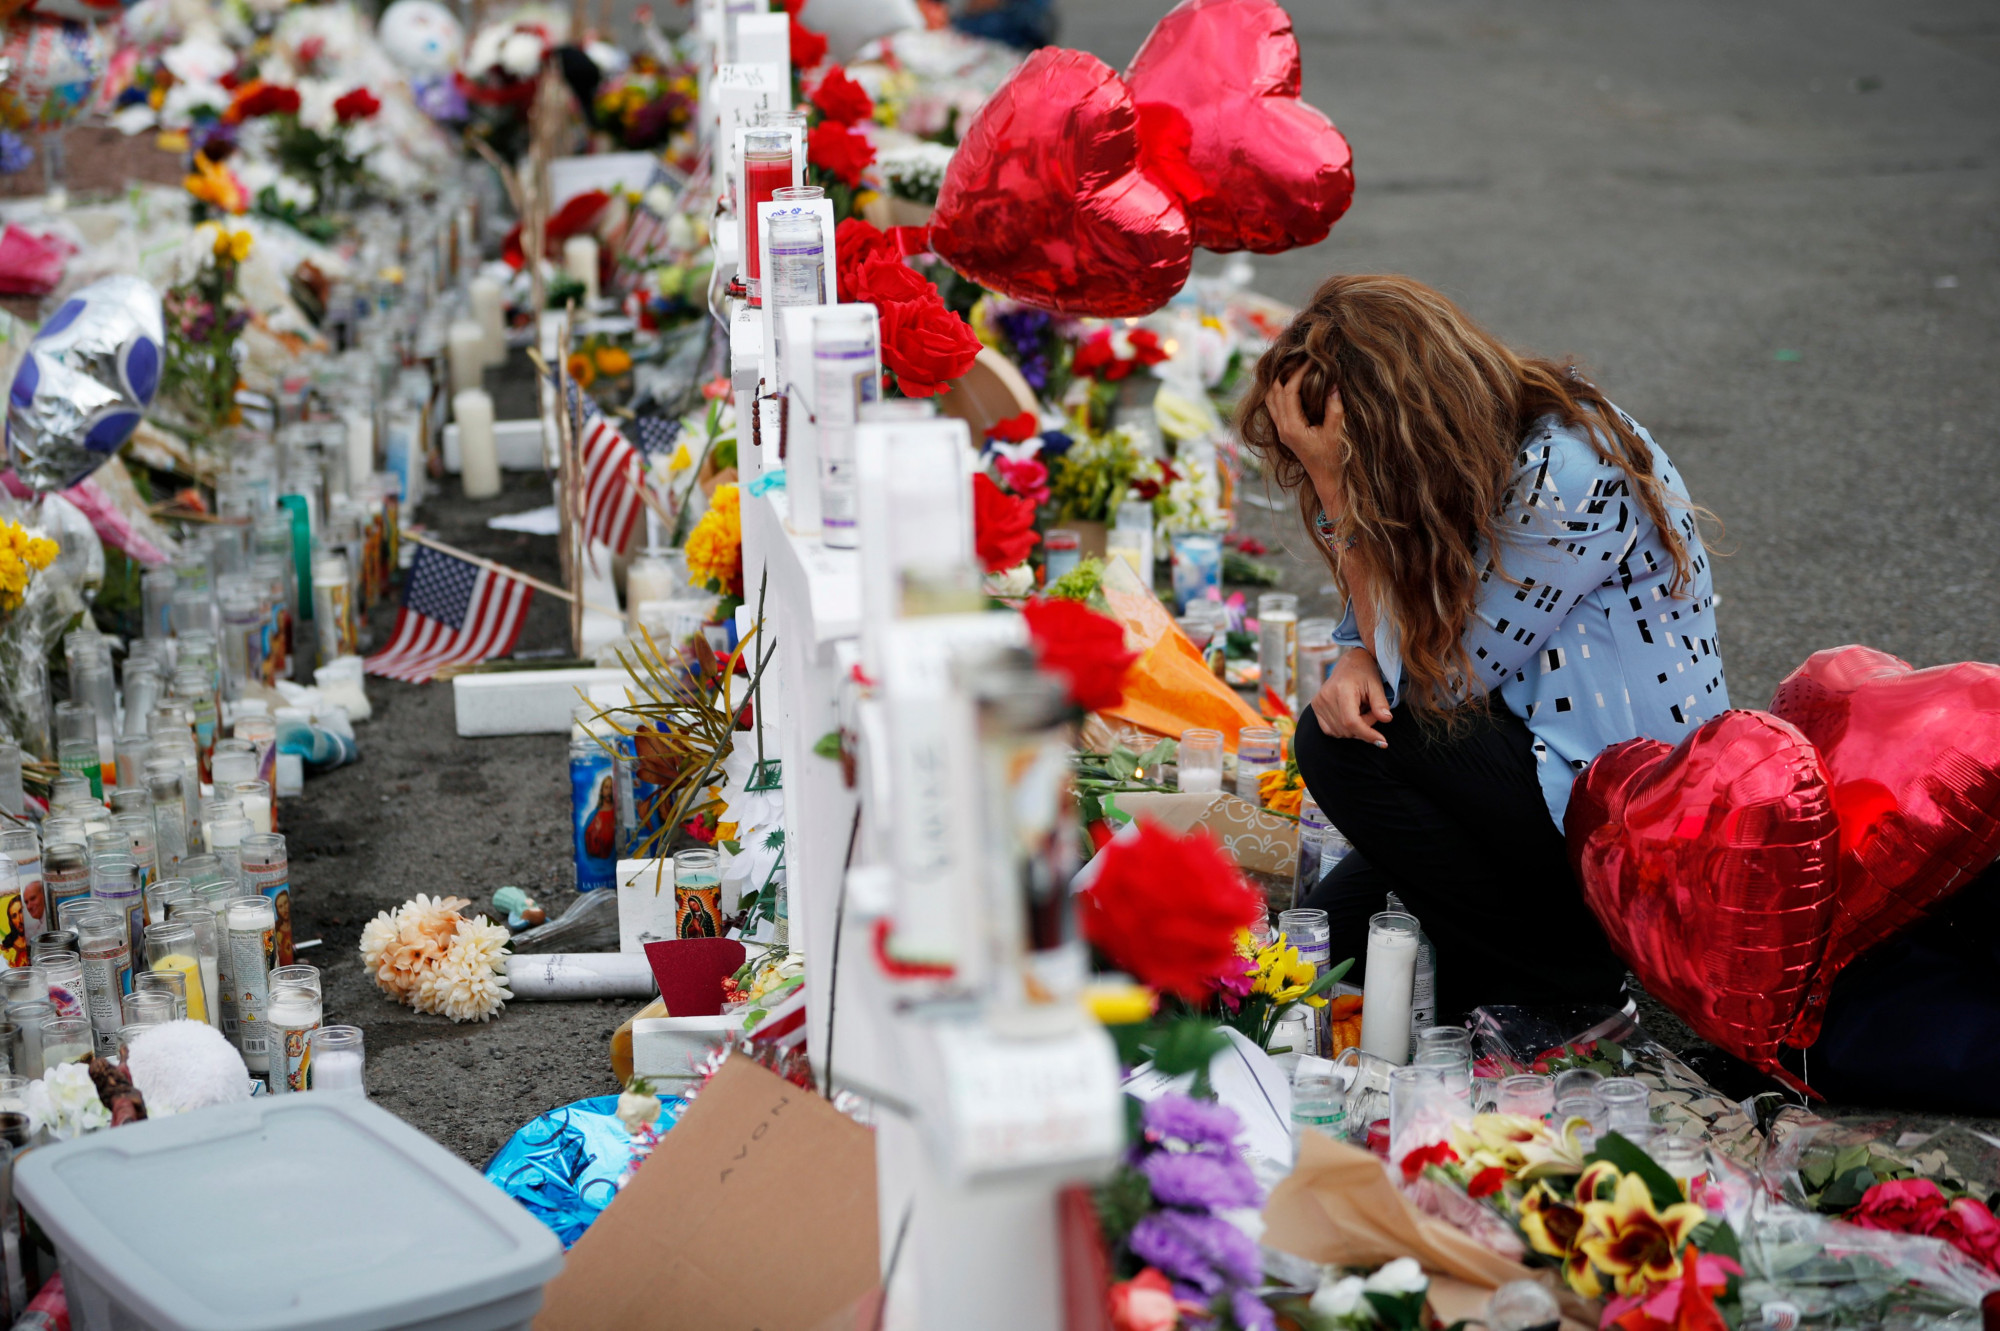 Nước Mỹ liên tục đón nhận tin tức về các vụ xả súng hàng loạt trong những ngày gần đây - Ảnh: John Locher /Associated Press